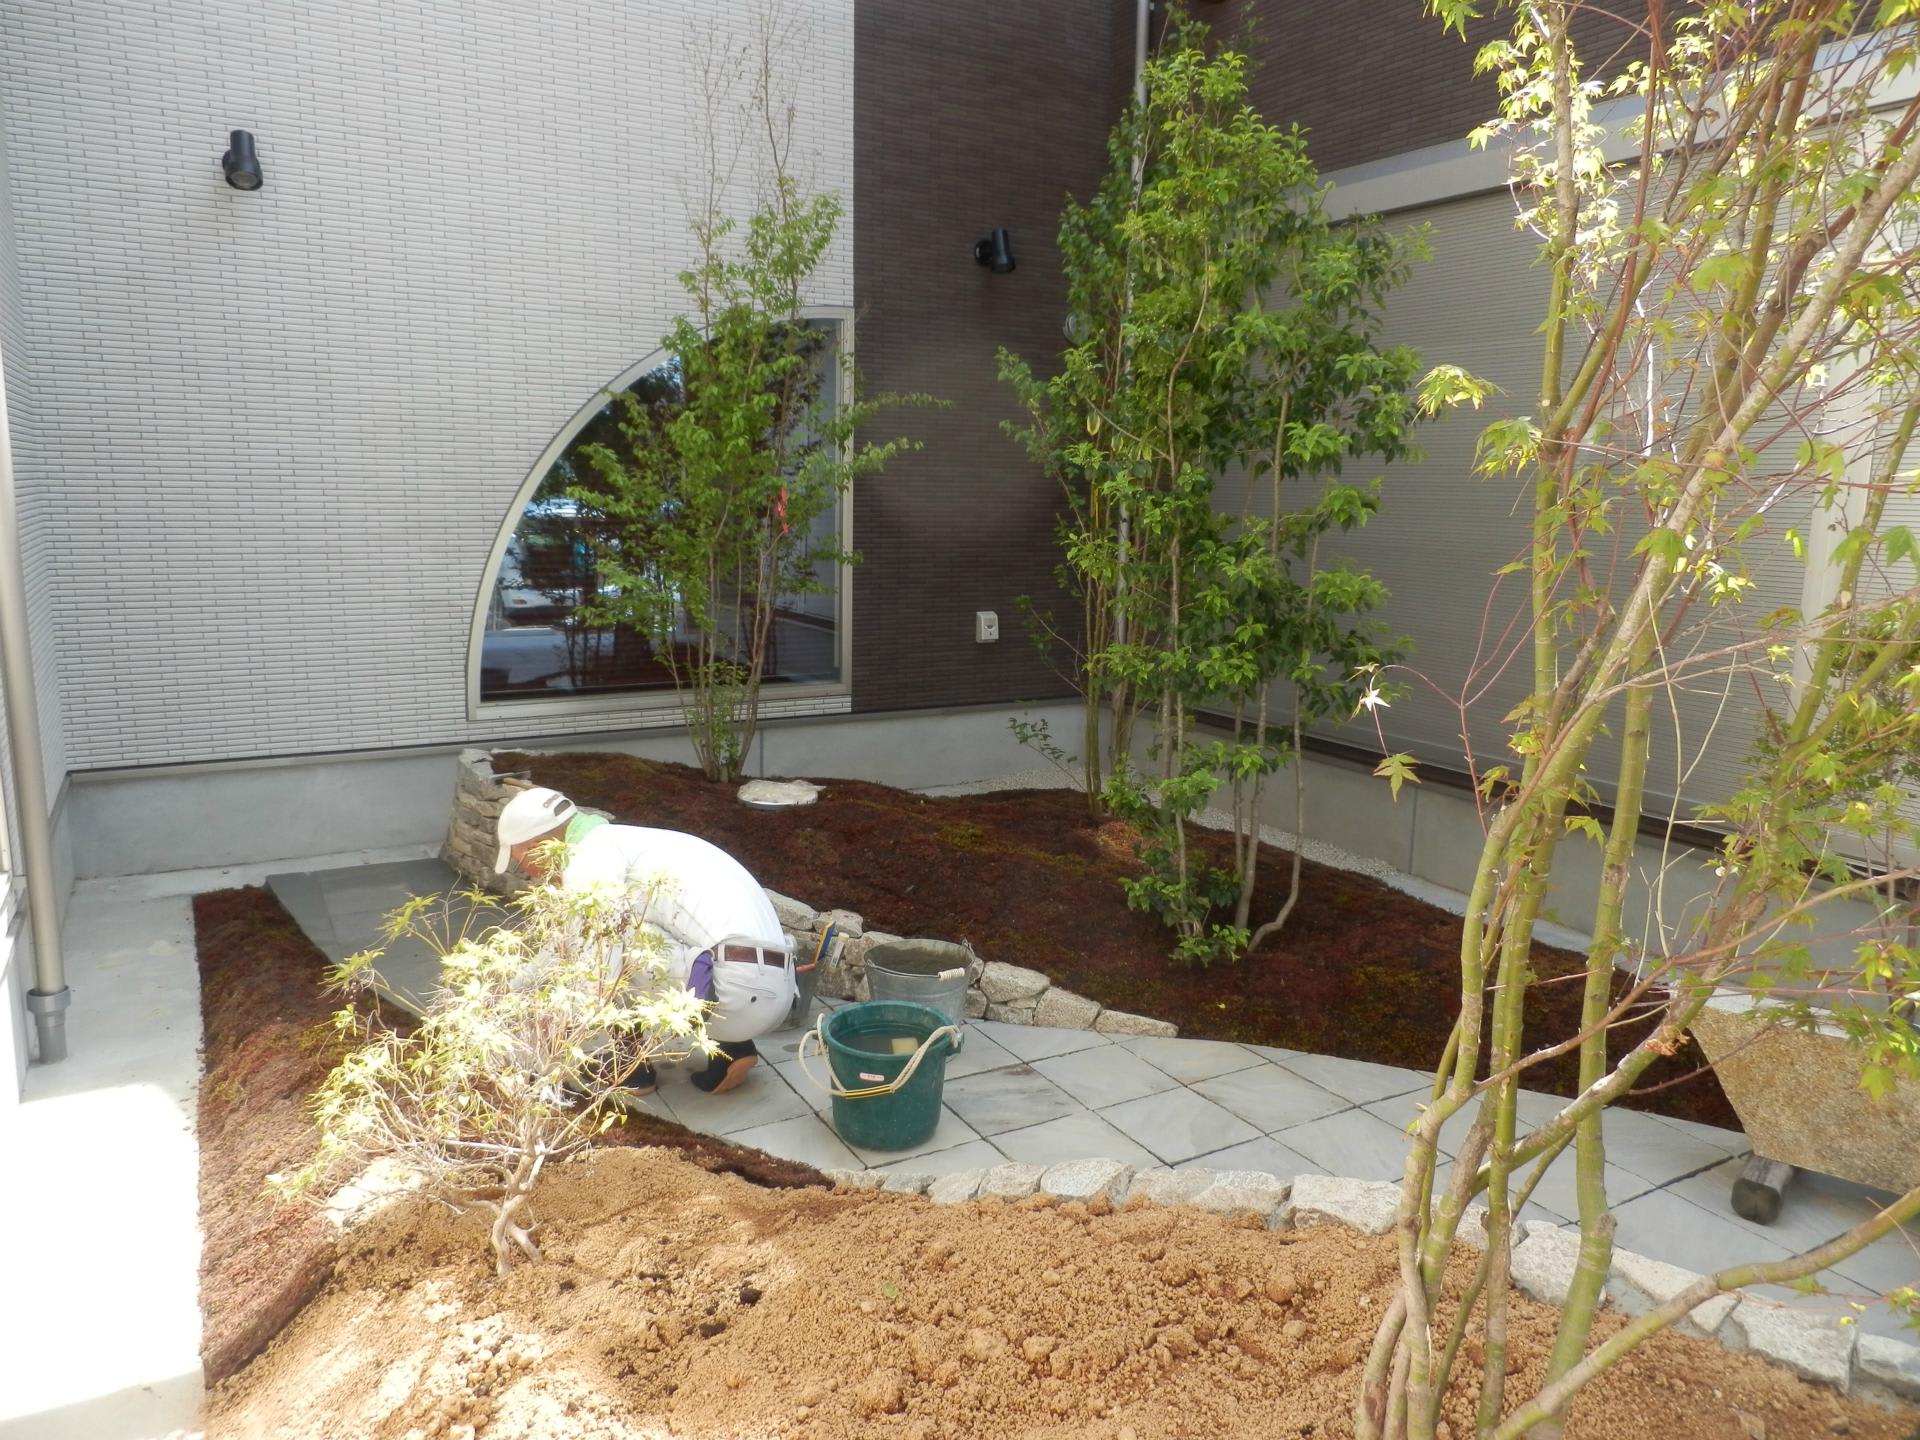 住まいづくり 庭園 外構 の工事で回廊との関係性のデザインがある中庭部分も 奈良県発 地元の建築家が感じる設計事務所の日常と家づくり日記